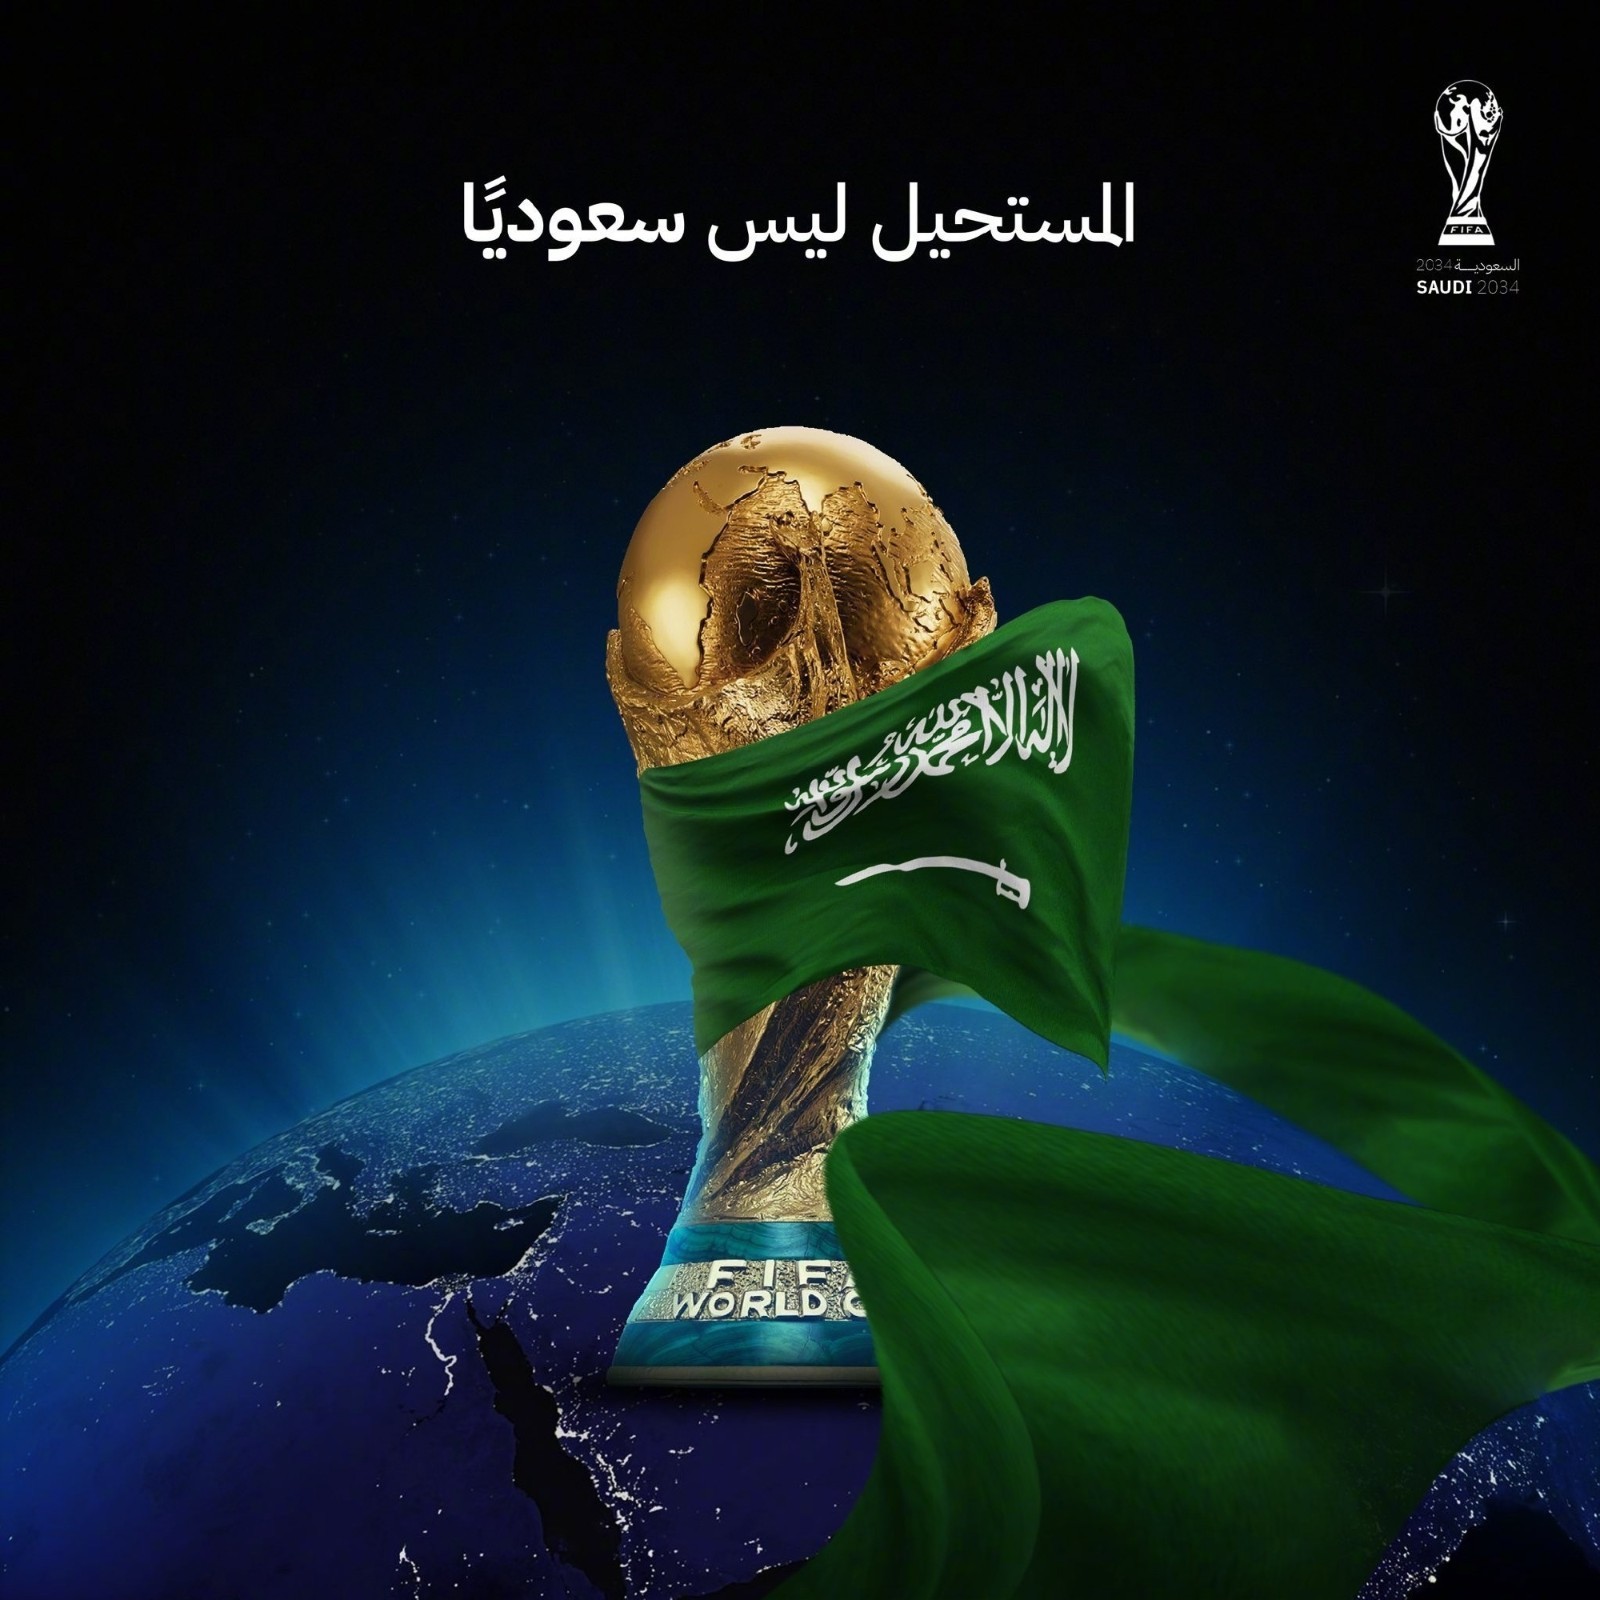 体育早餐11.1|沙特是2034世界杯唯一申办国 安踏宣布更改公司标志